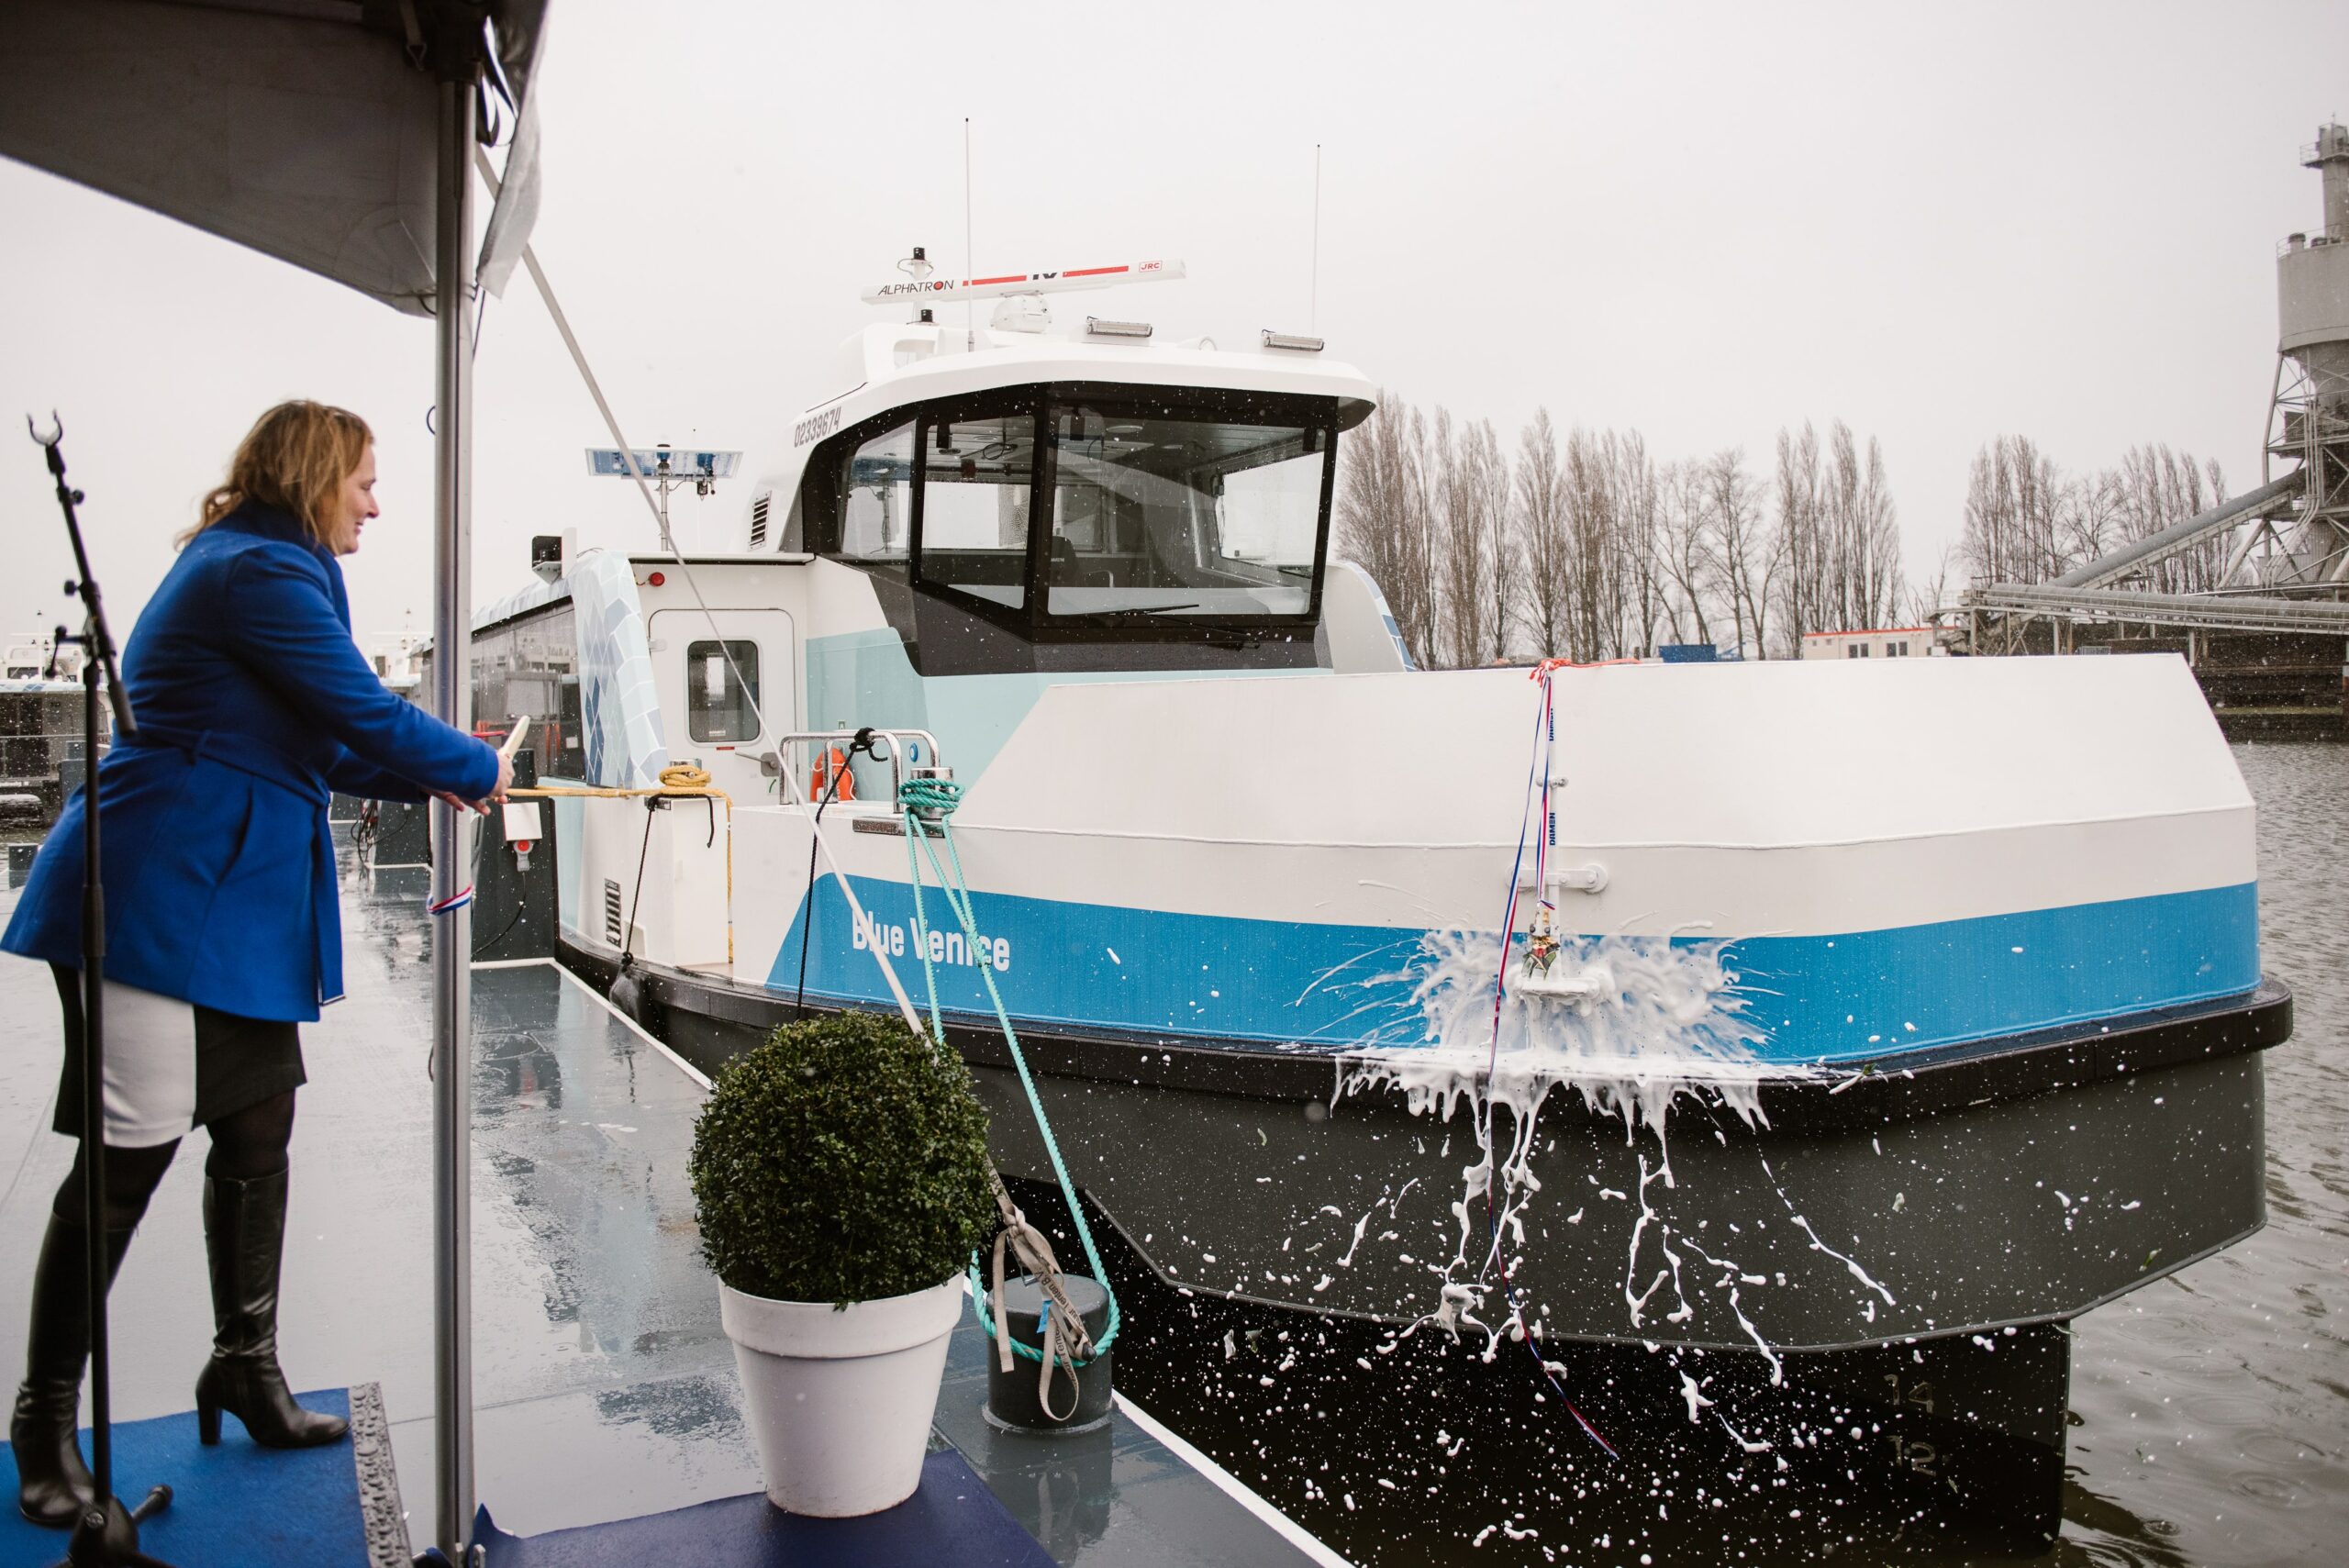 Doop Blue Venice-Aqualiner (foto Romy vd Boogaart)